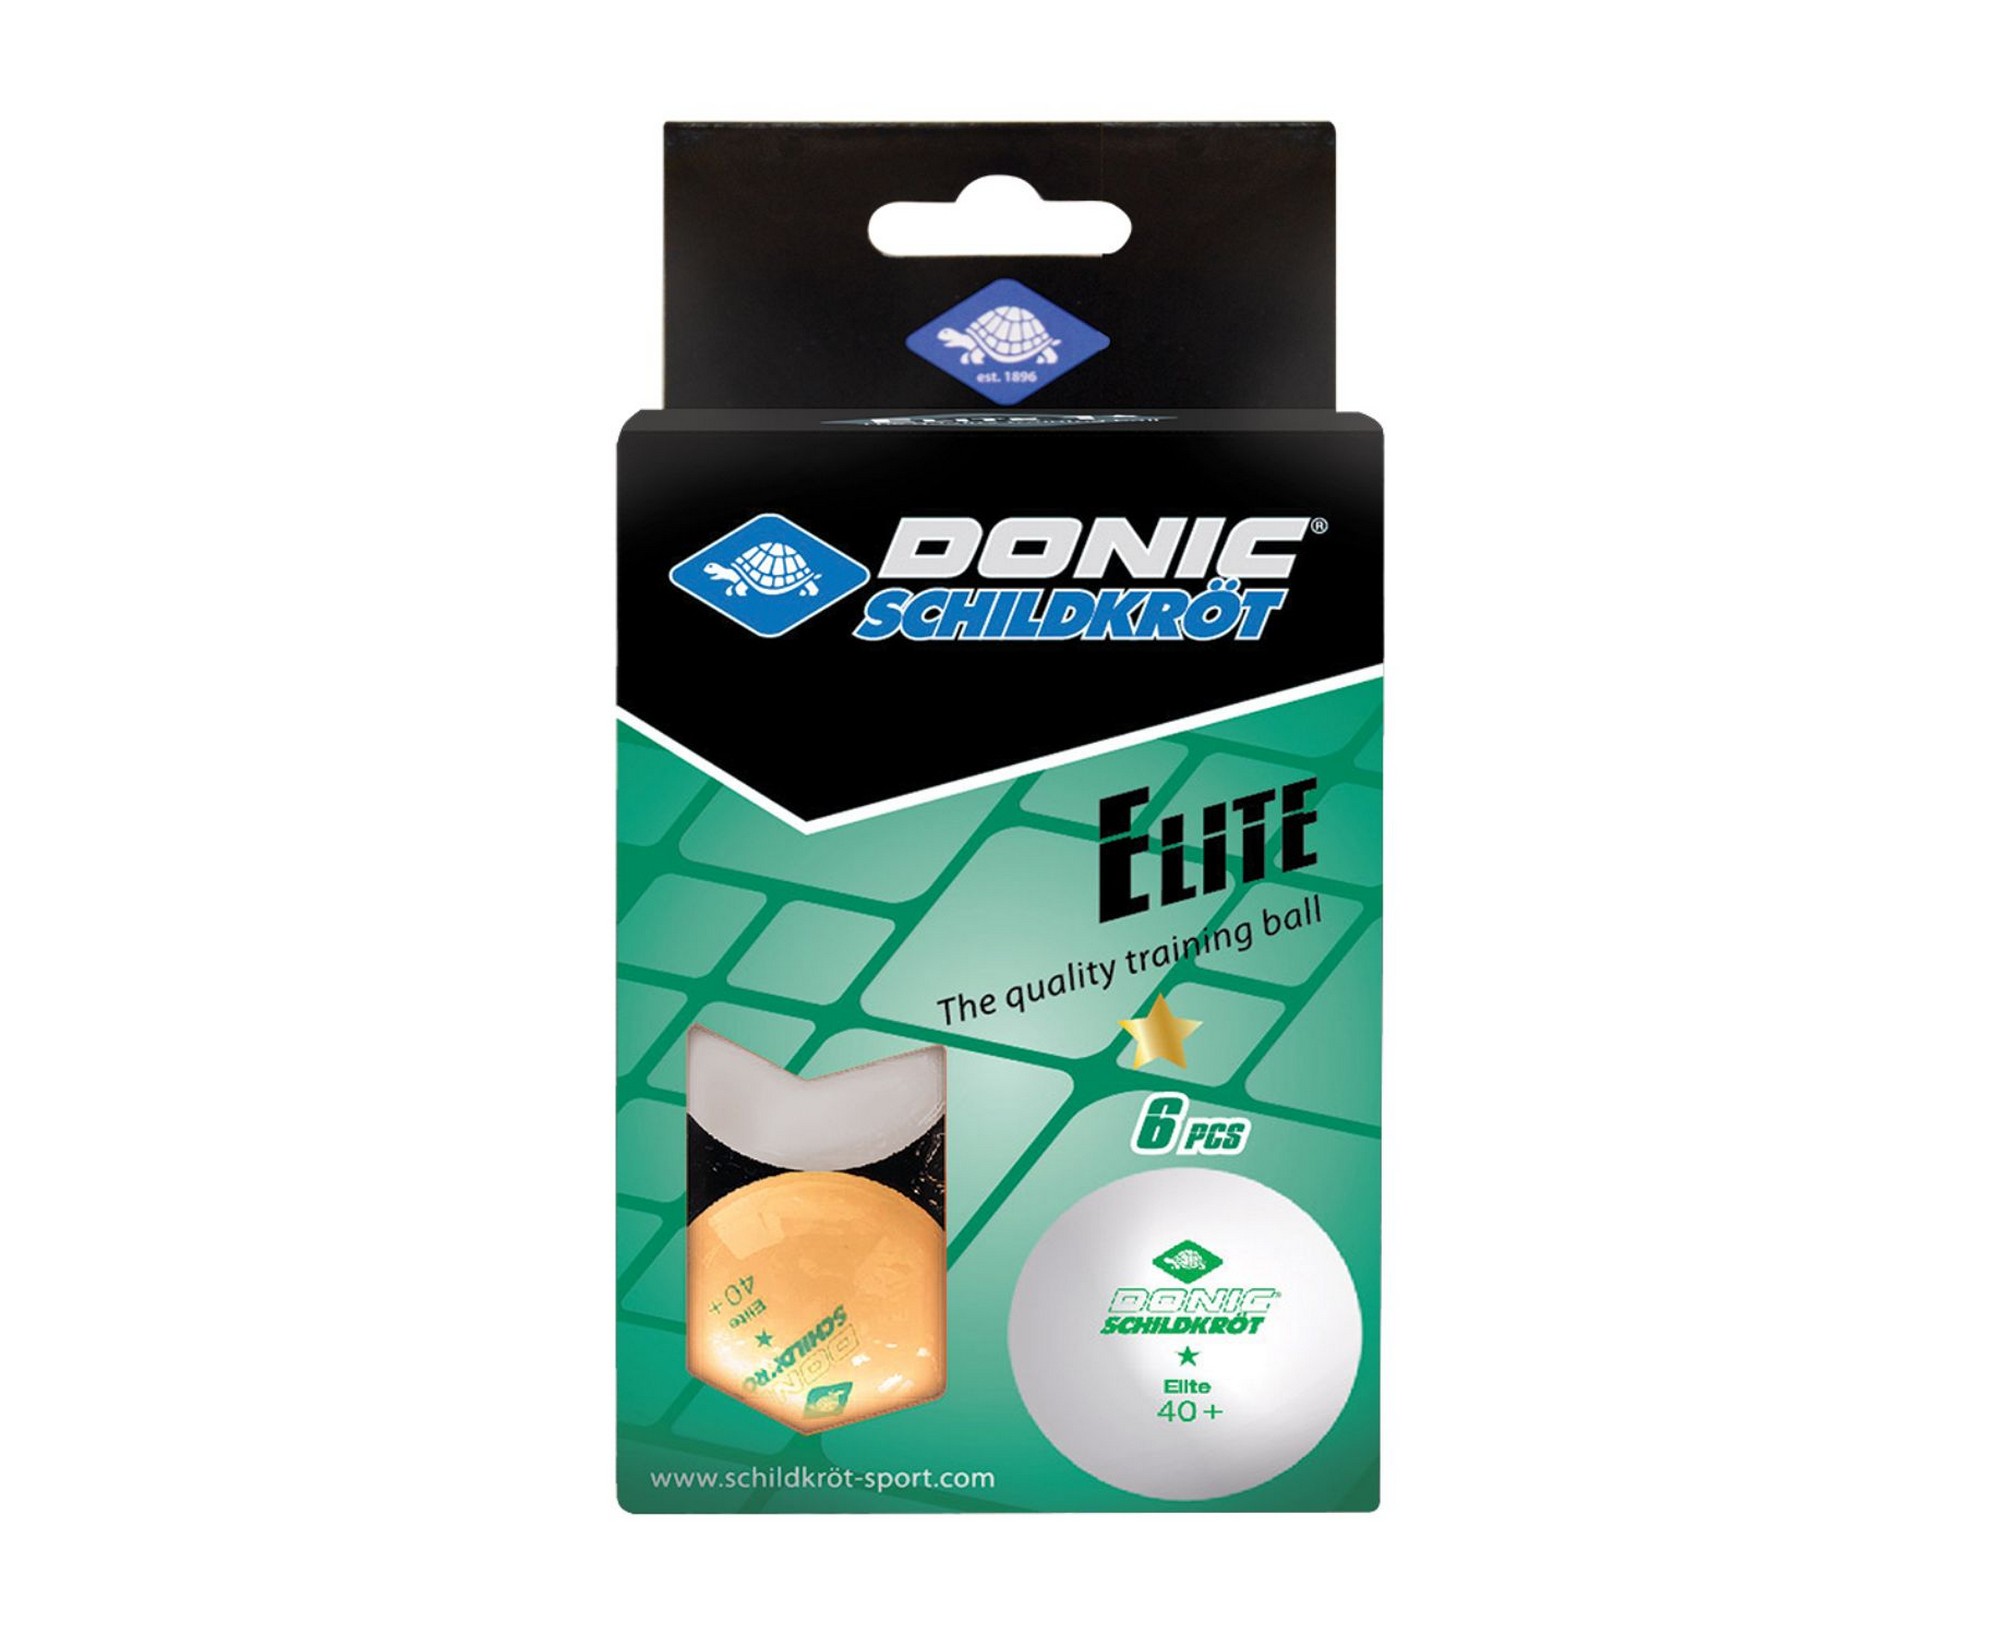 Мячики для настольного тенниса Donic Elite 1* 40+, 6 штук 608511 белый + оранжевый